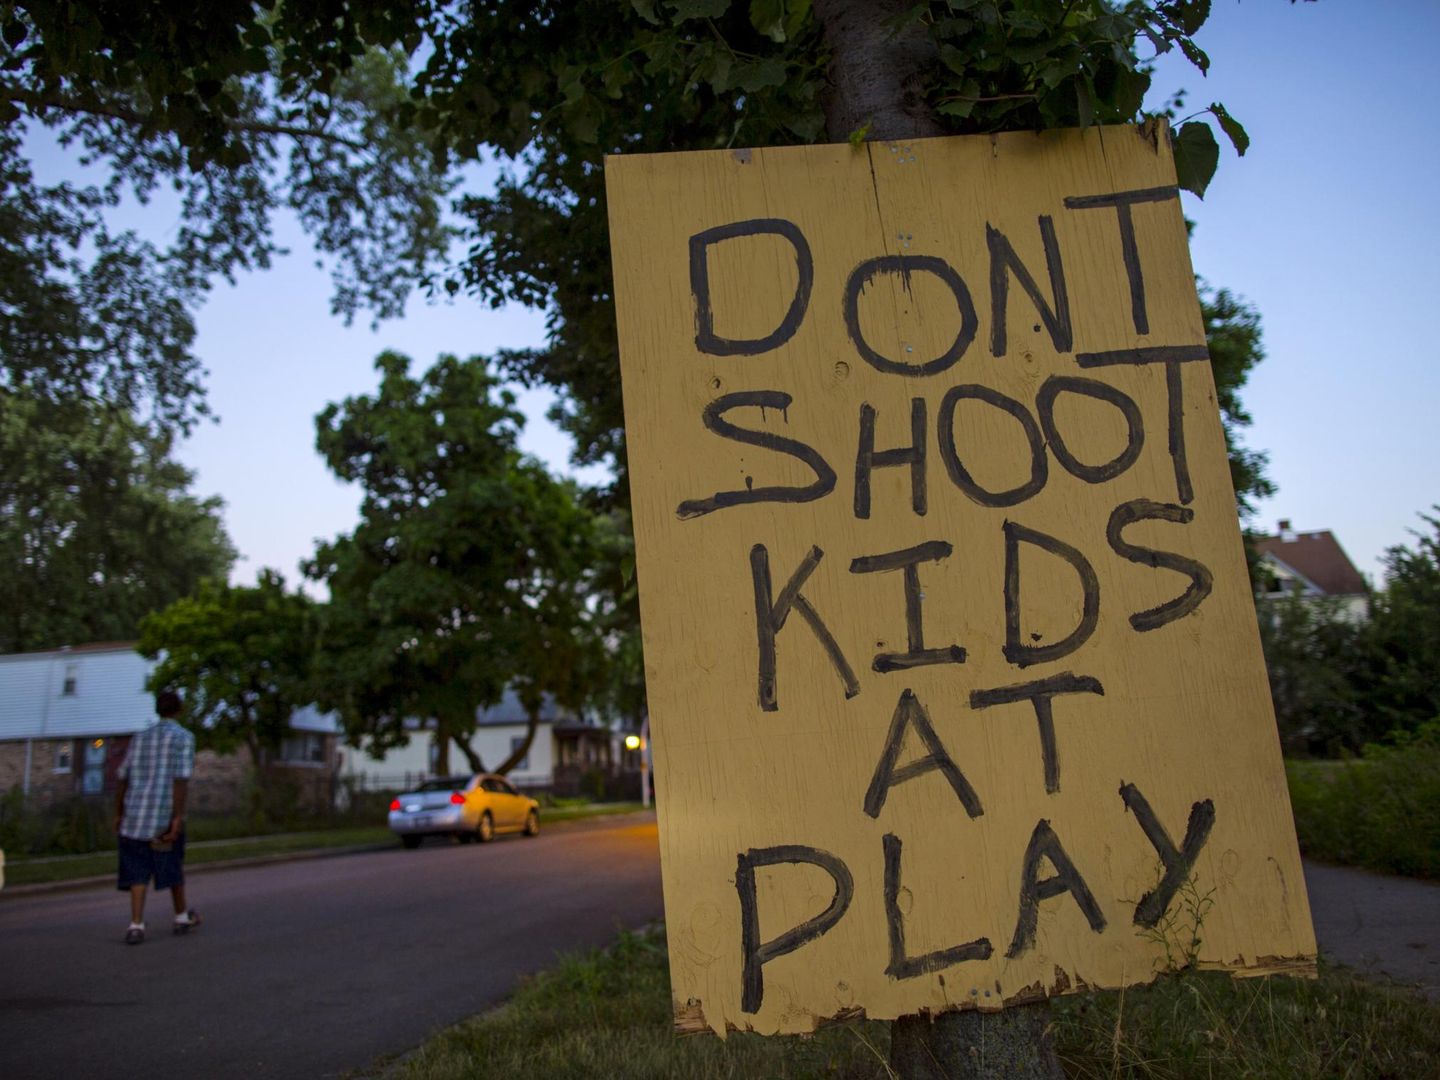 Un hombre camina por Englewood, en Chicago, donde los tiroteos son habituales, tras un cartel que pide no disparar a los niños que estén jugando.  (Reuters)